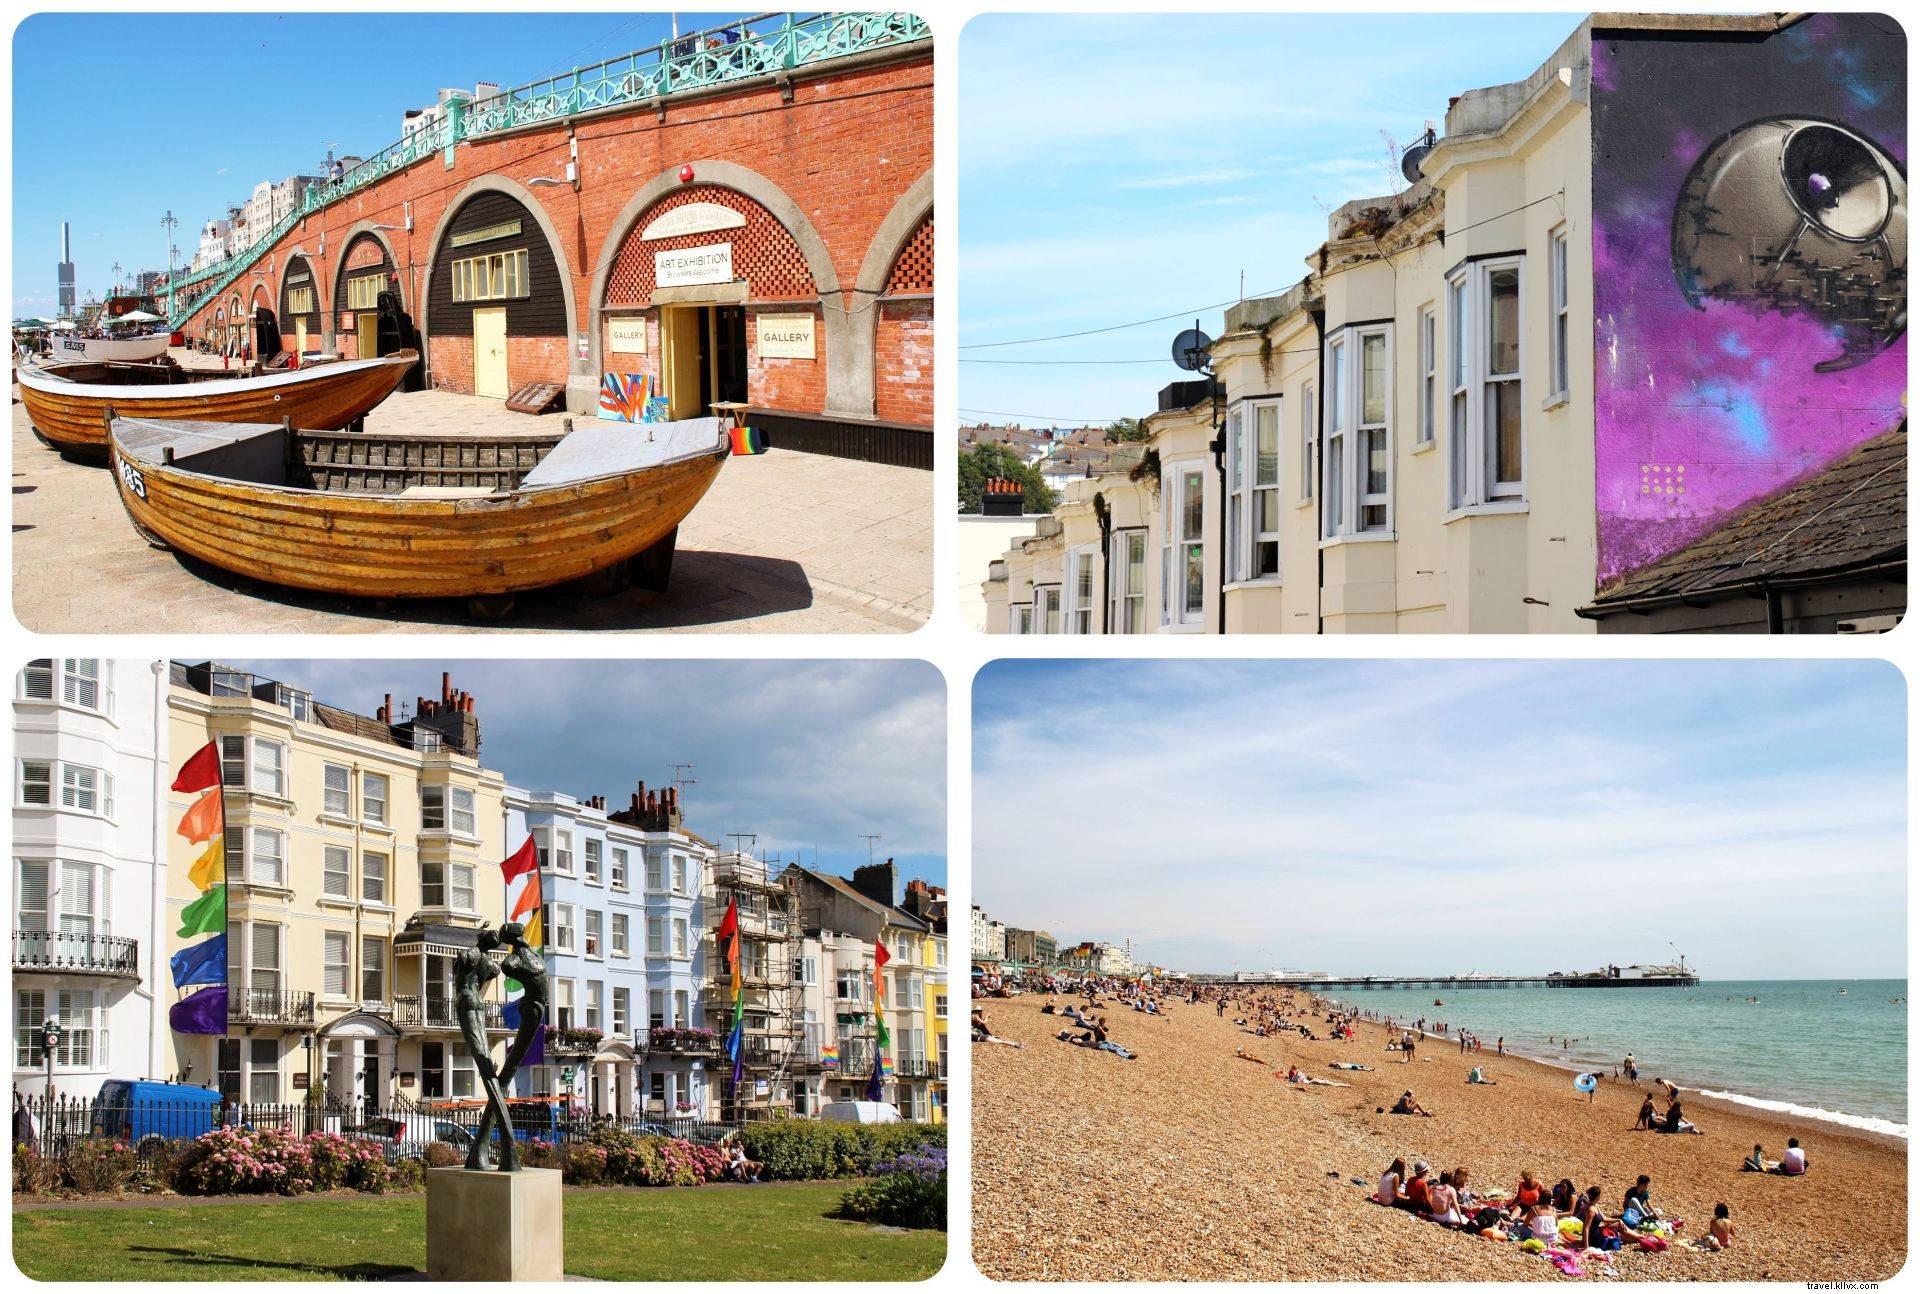 Visita Brighton:cosa rende Brighton così attraente?